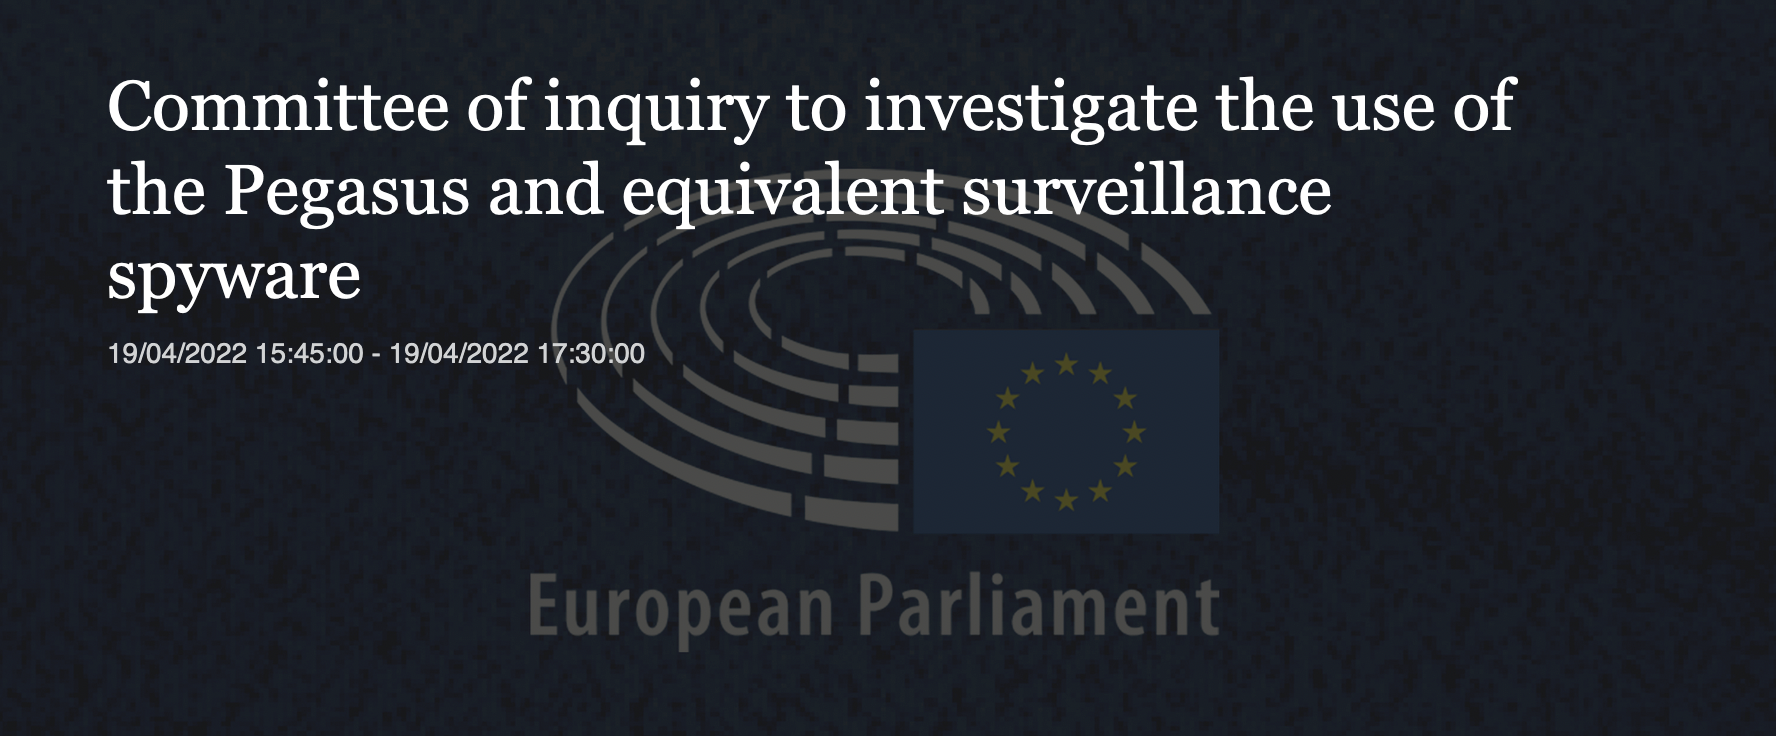 European Parliament: PEGA Committee of inquiry